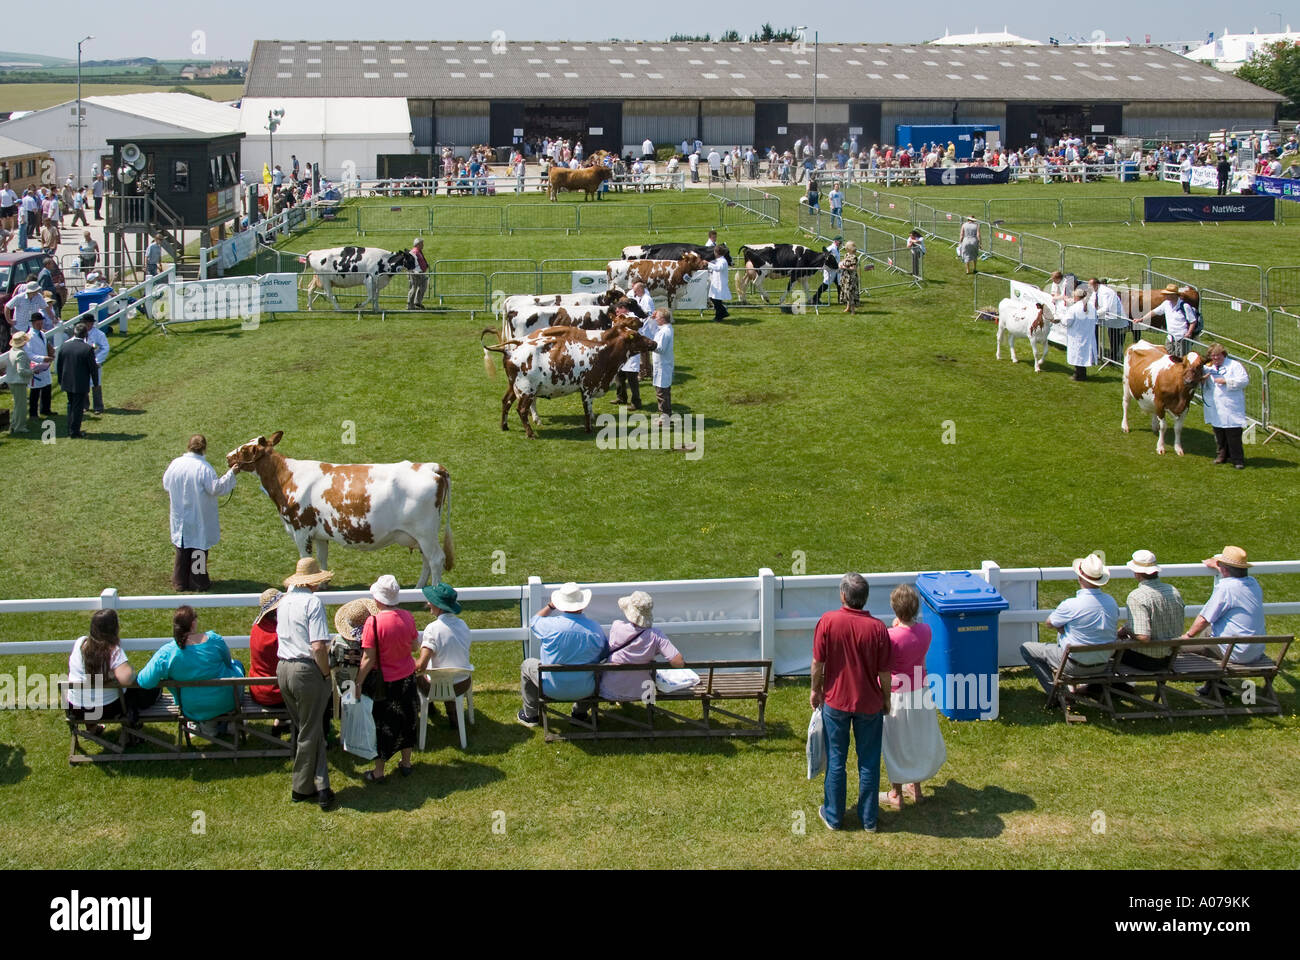 Royal Cornwall Agricultural Summer Show agriculteurs élevage de bétail arène de jugement et anneau de parading spectateurs et sièges à Wadebridge Cornwall Angleterre Royaume-Uni Banque D'Images